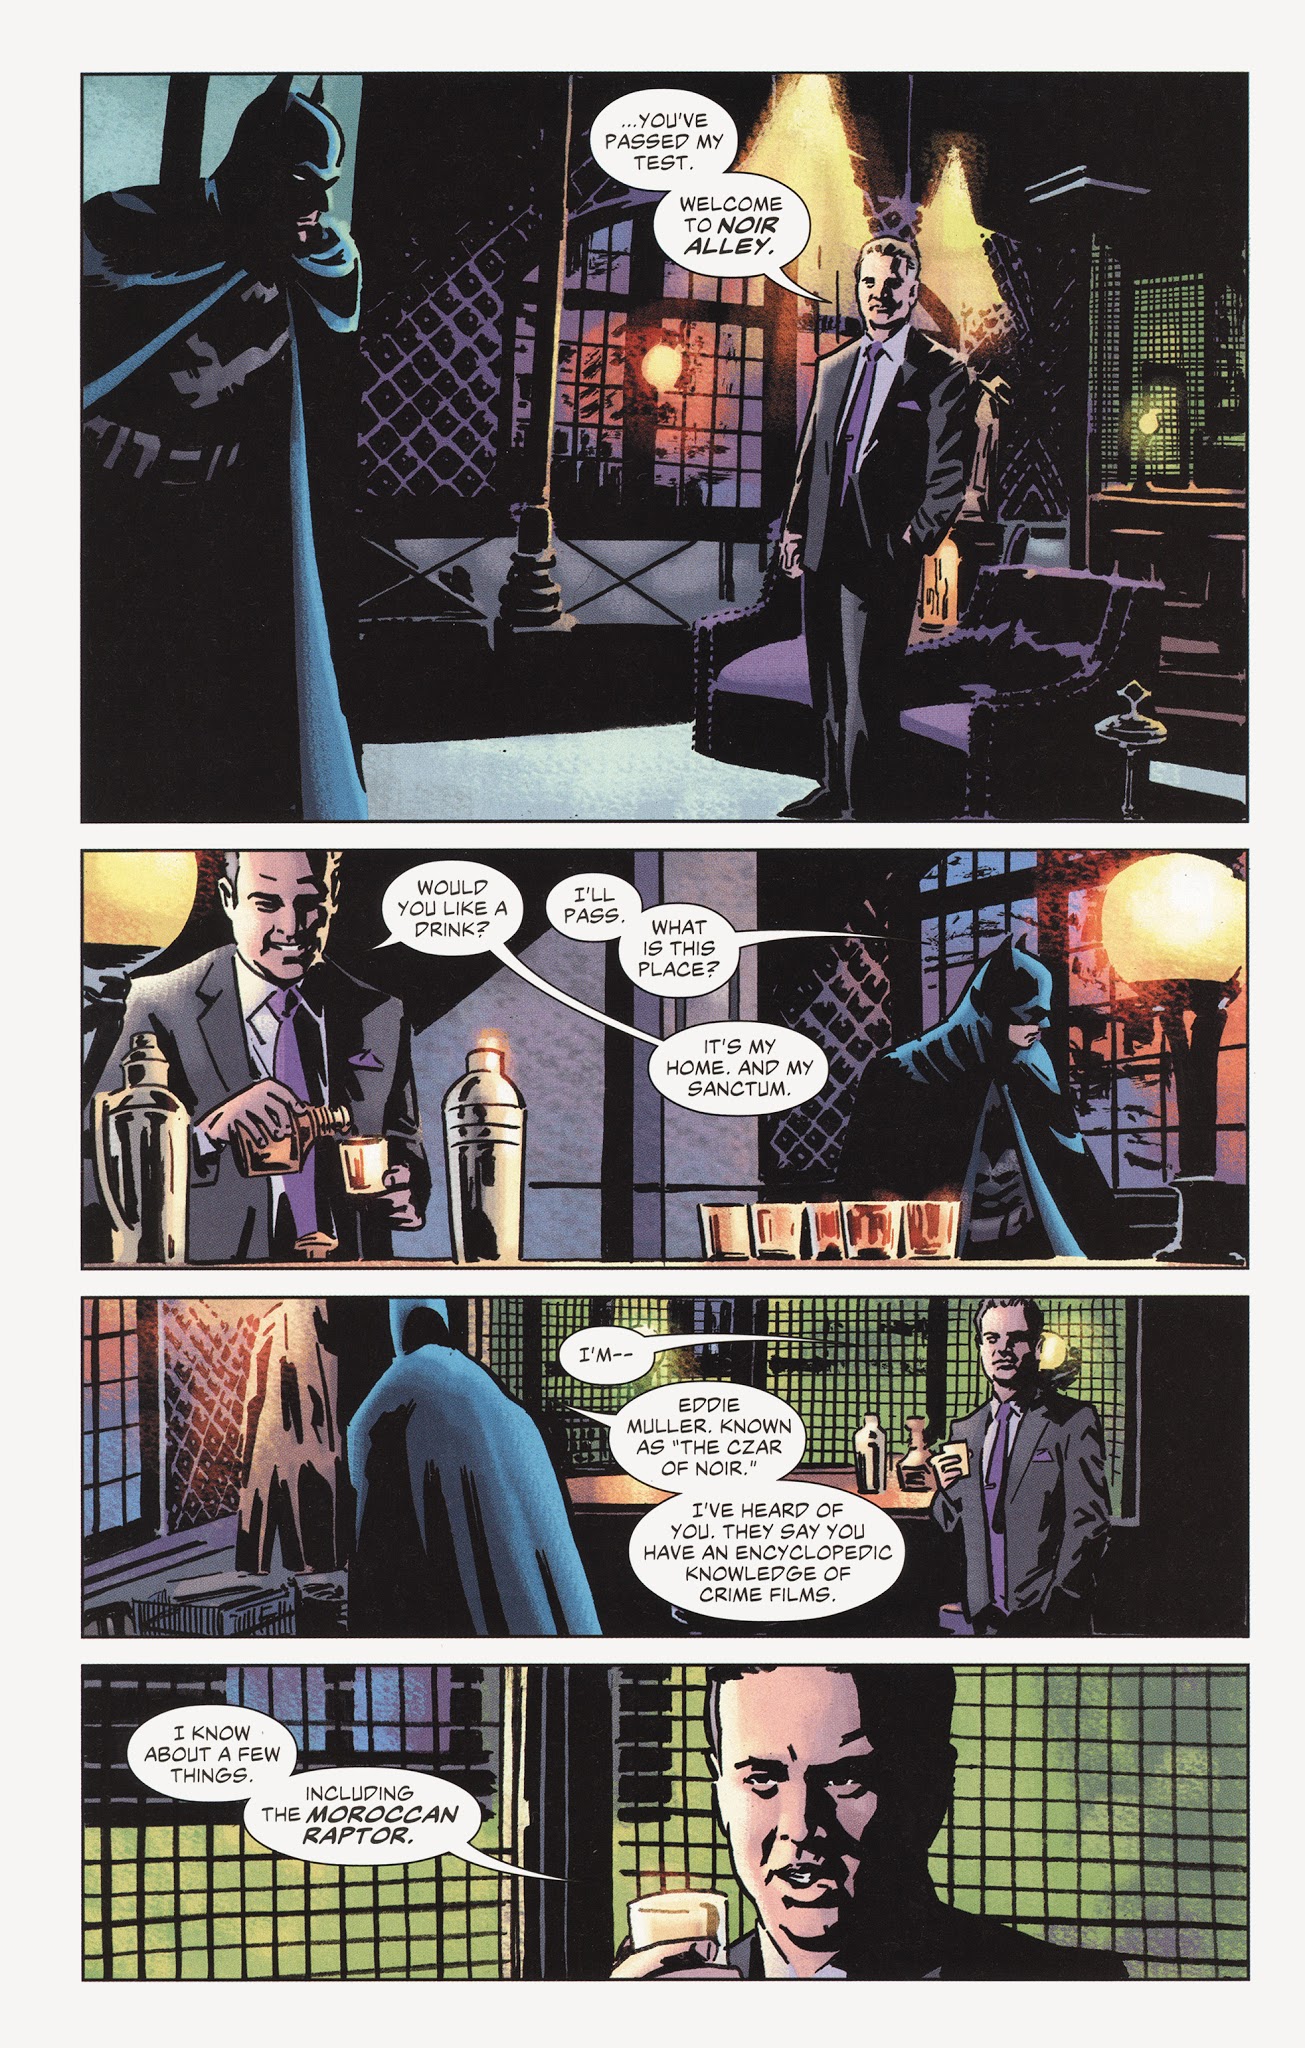 Batman In Noir Alley Full | Read Batman In Noir Alley Full comic online in  high quality. Read Full Comic online for free - Read comics online in high  quality .|